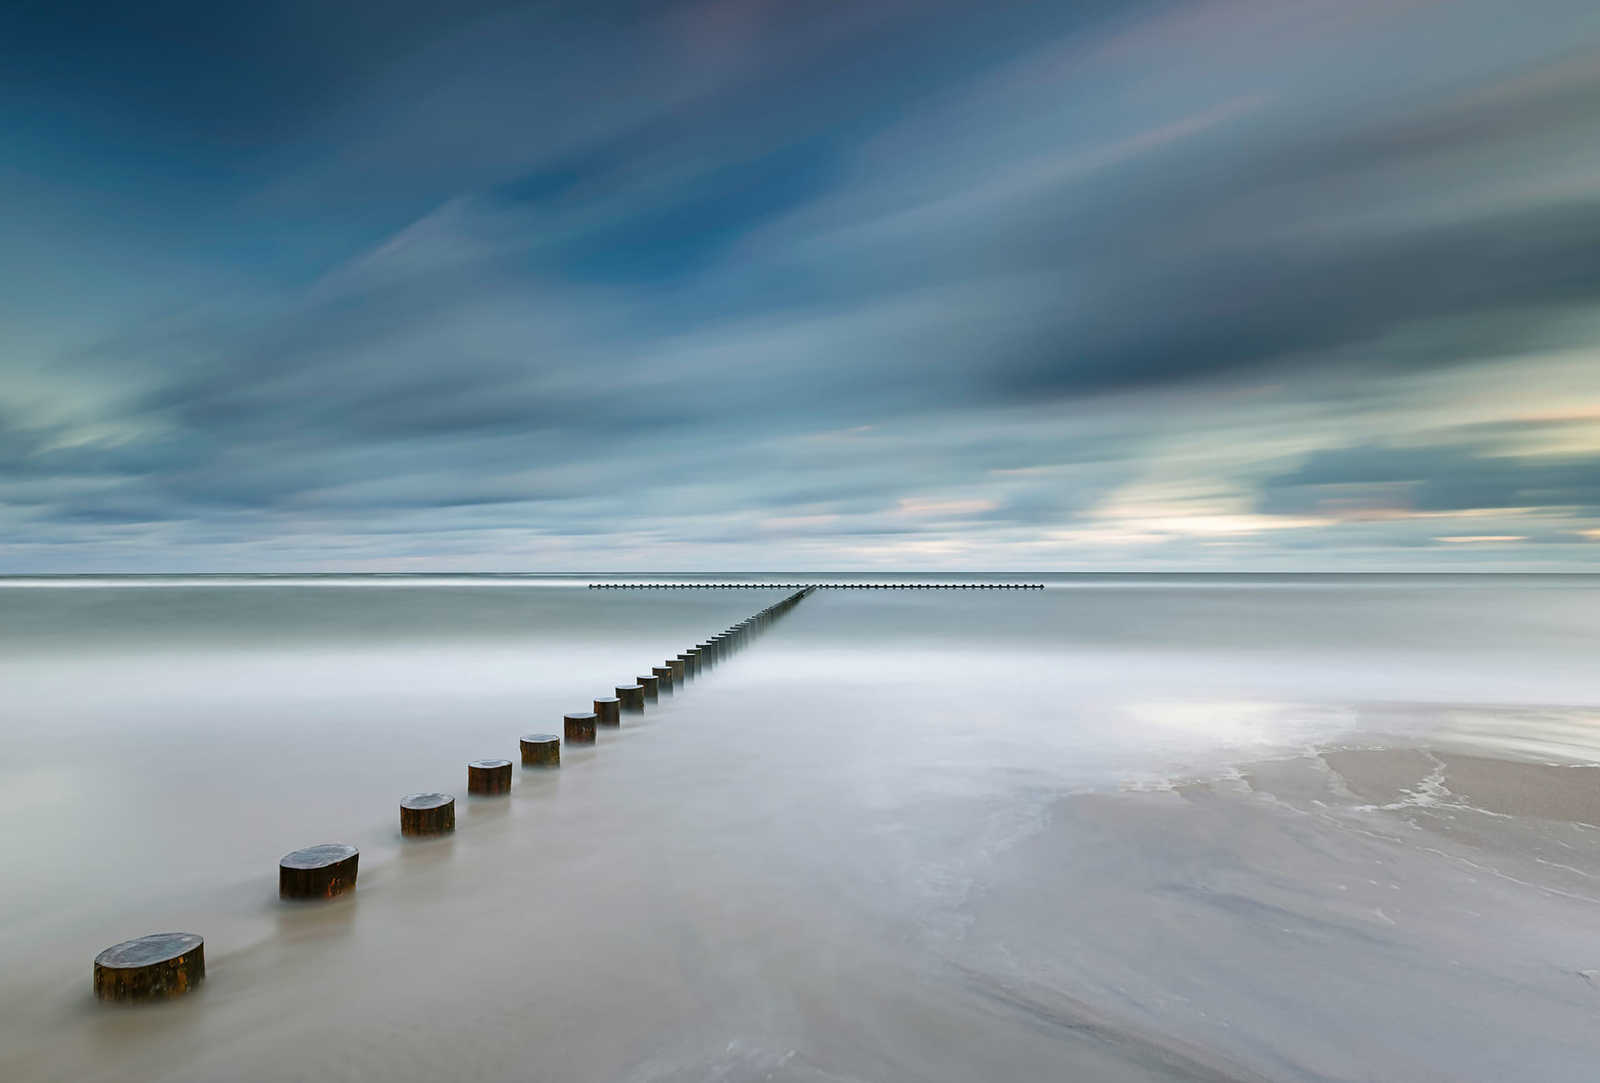             Fototapete Ostseeküste in Polen – Blau, Weiß, Braun
        